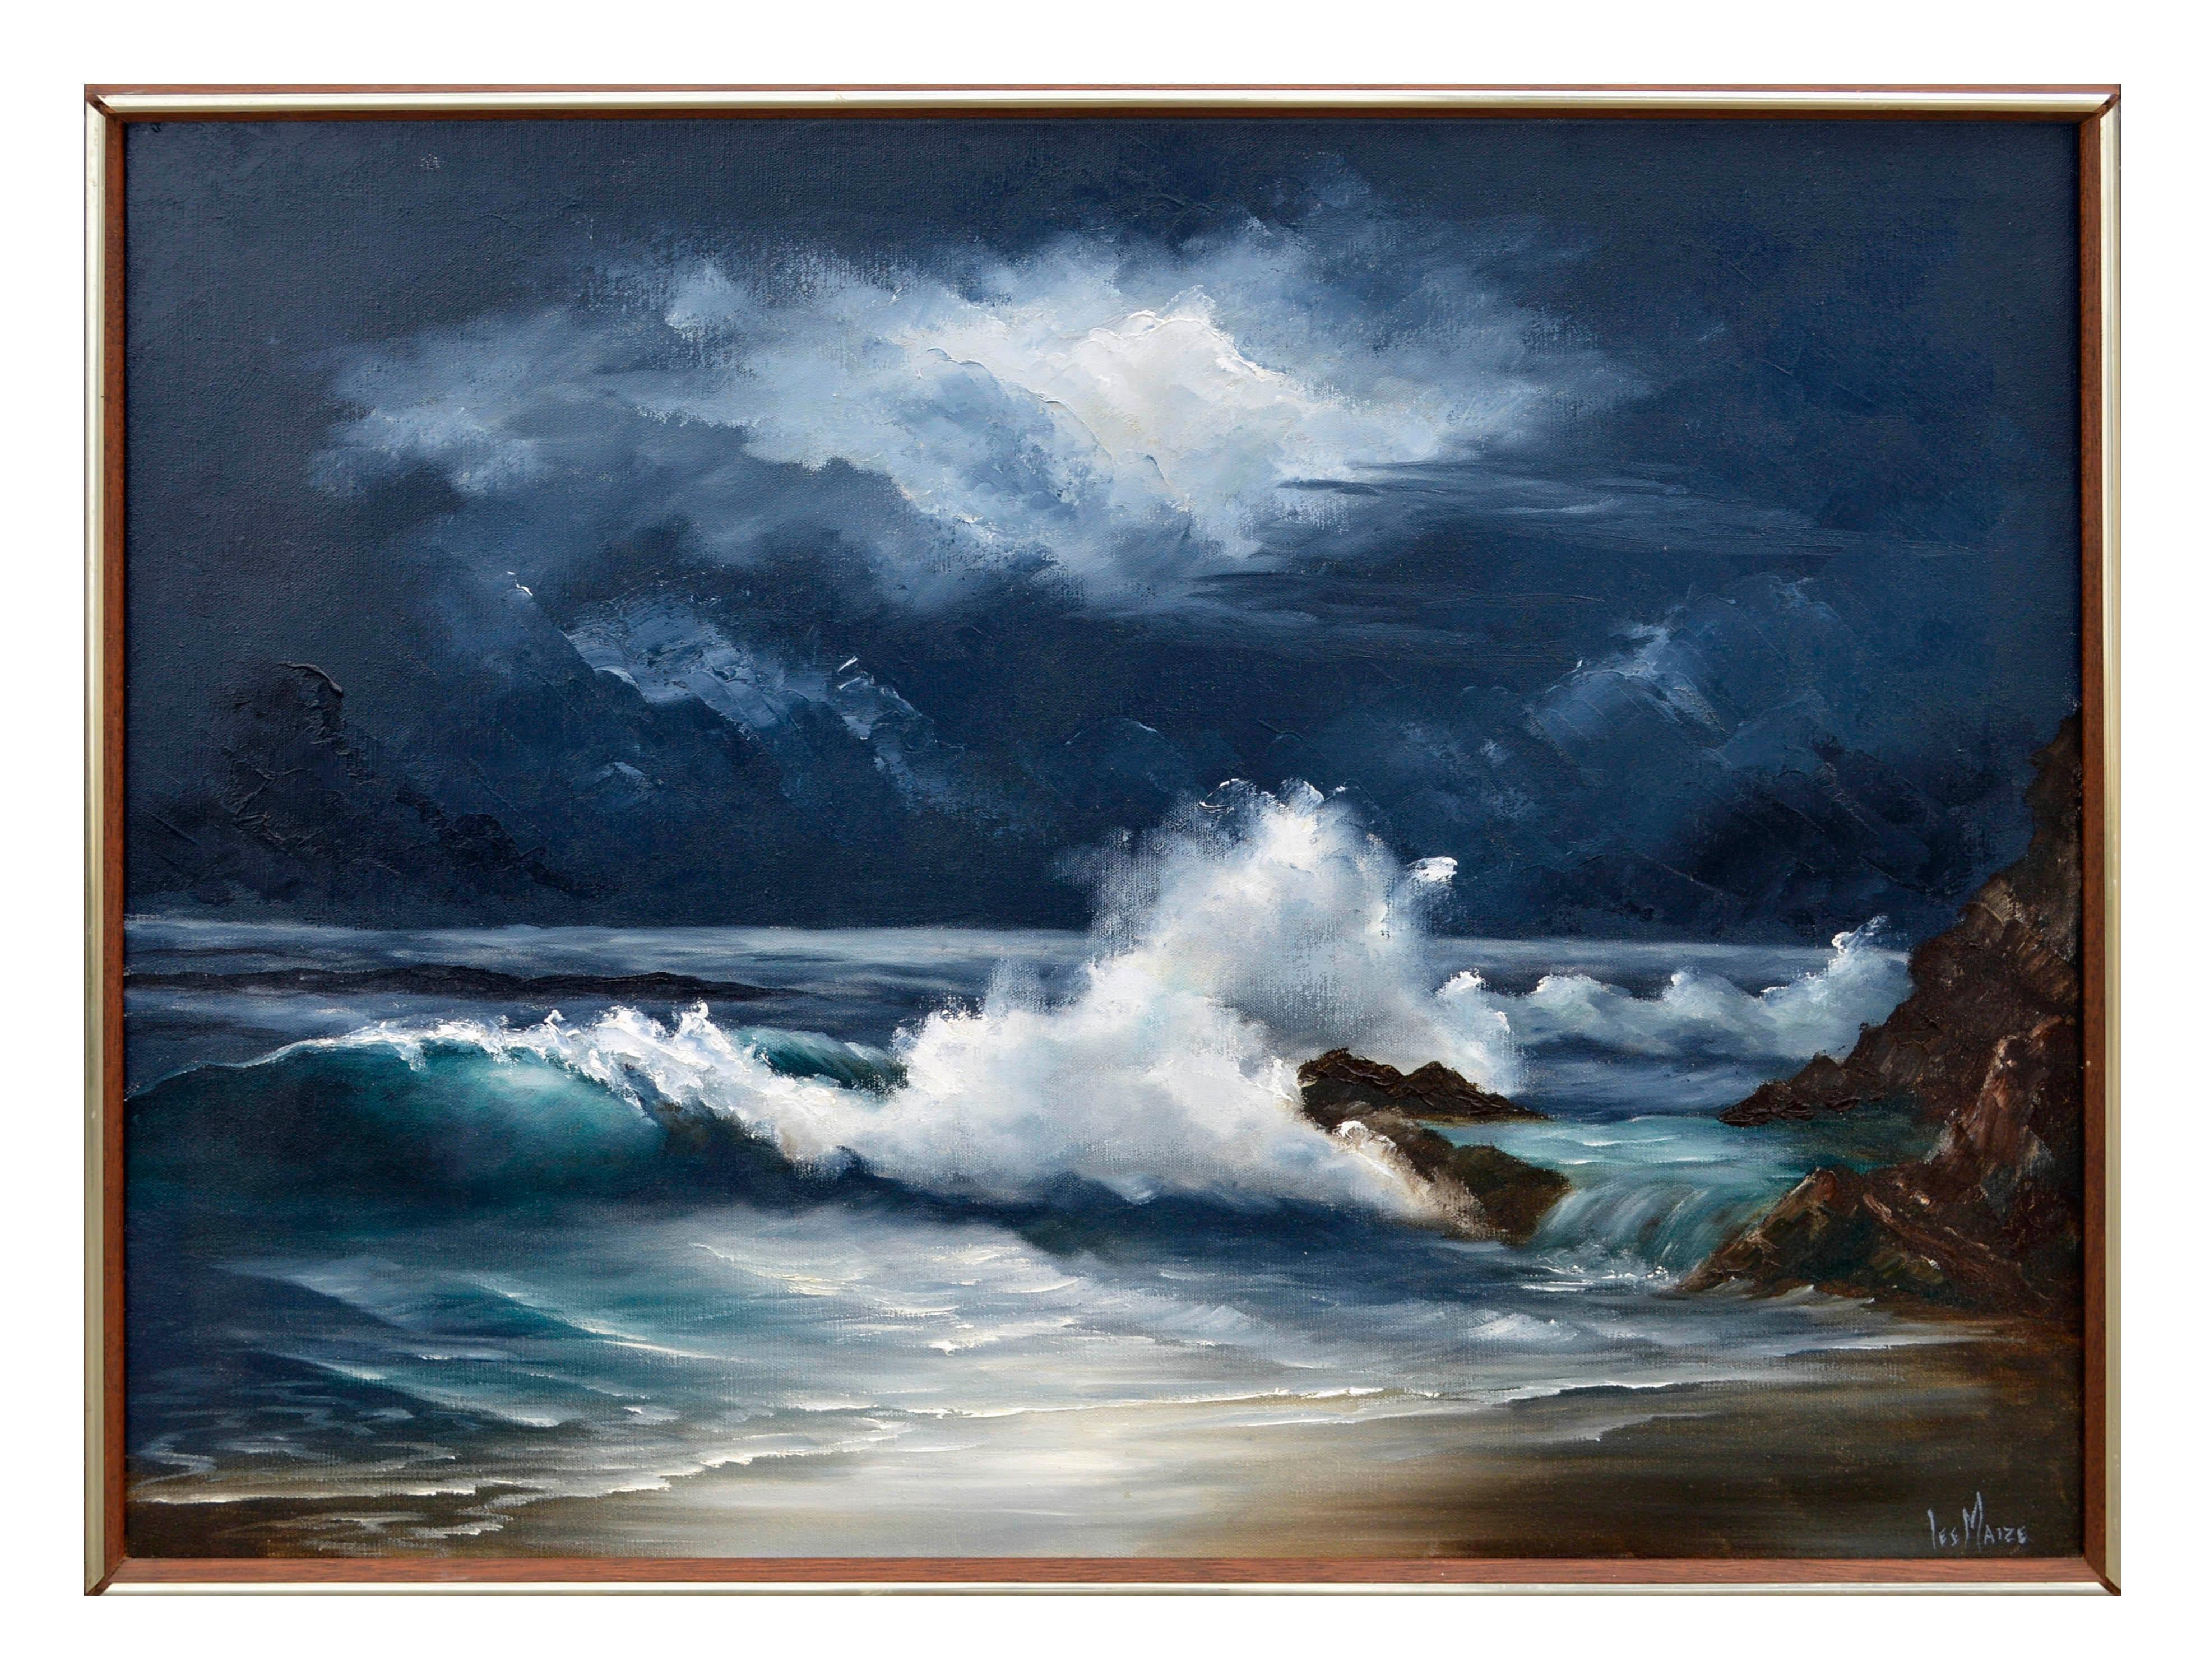 Lee Maize Landscape Painting - Moonlit Waves - Nocturnal Seascape 